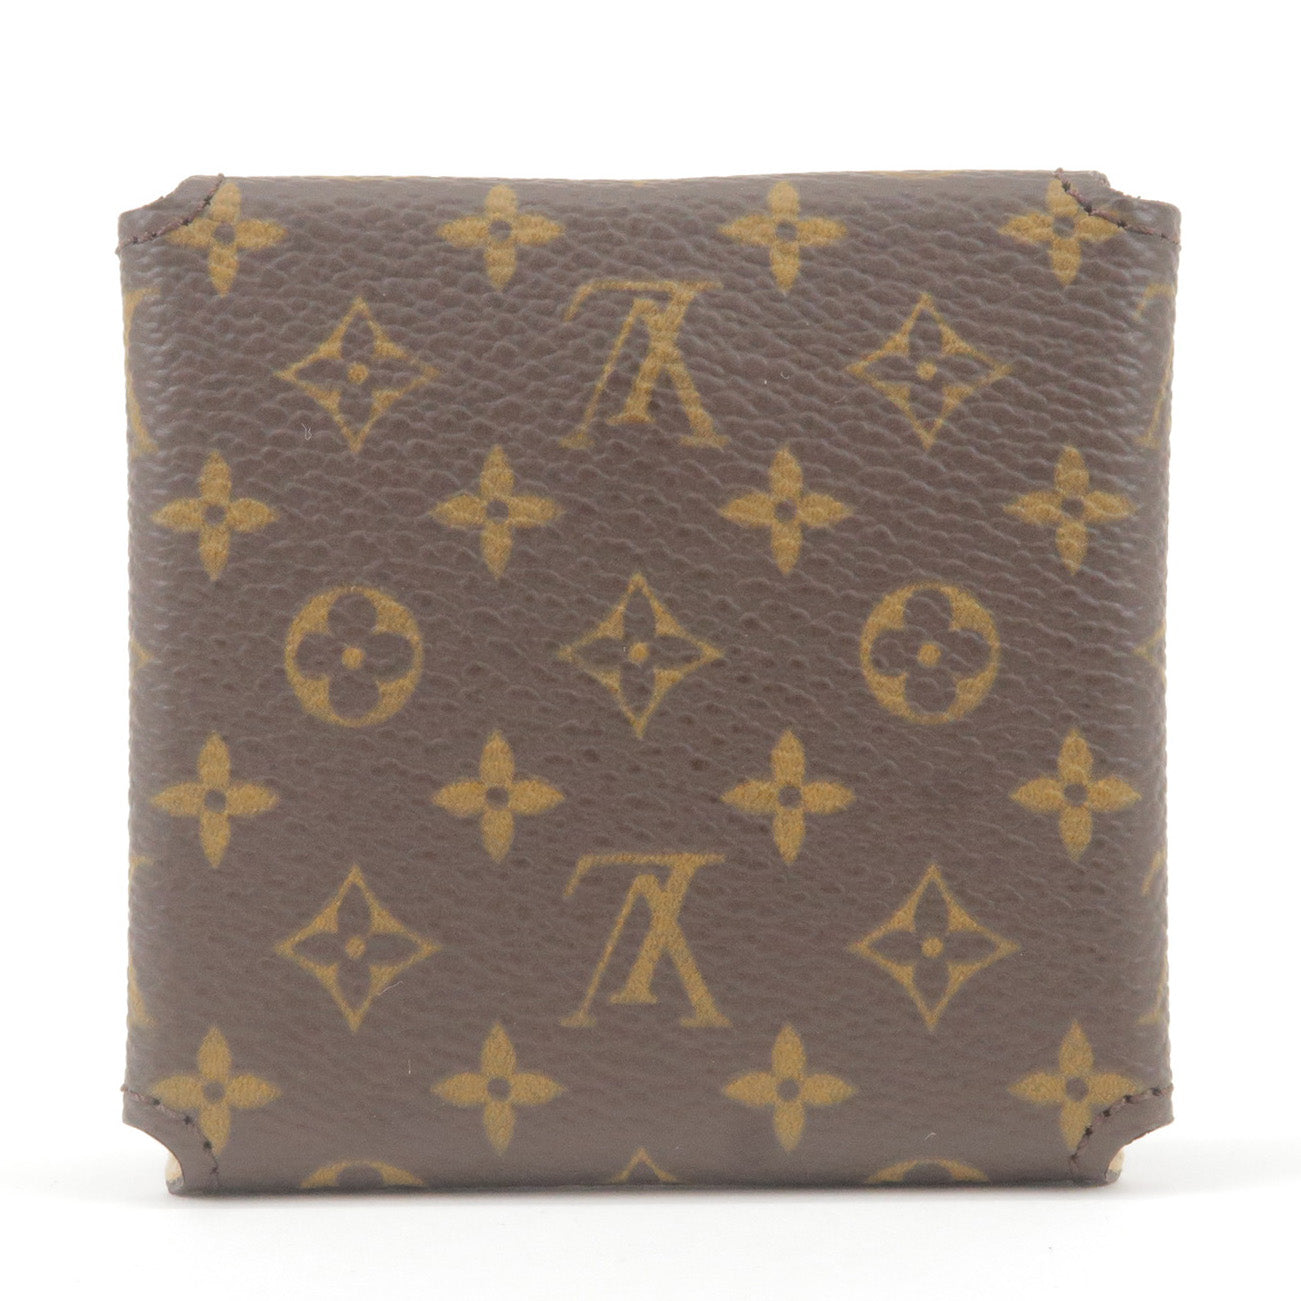 Croissant - Shoulder - Monogram - ep_vintage luxury Store - Louis